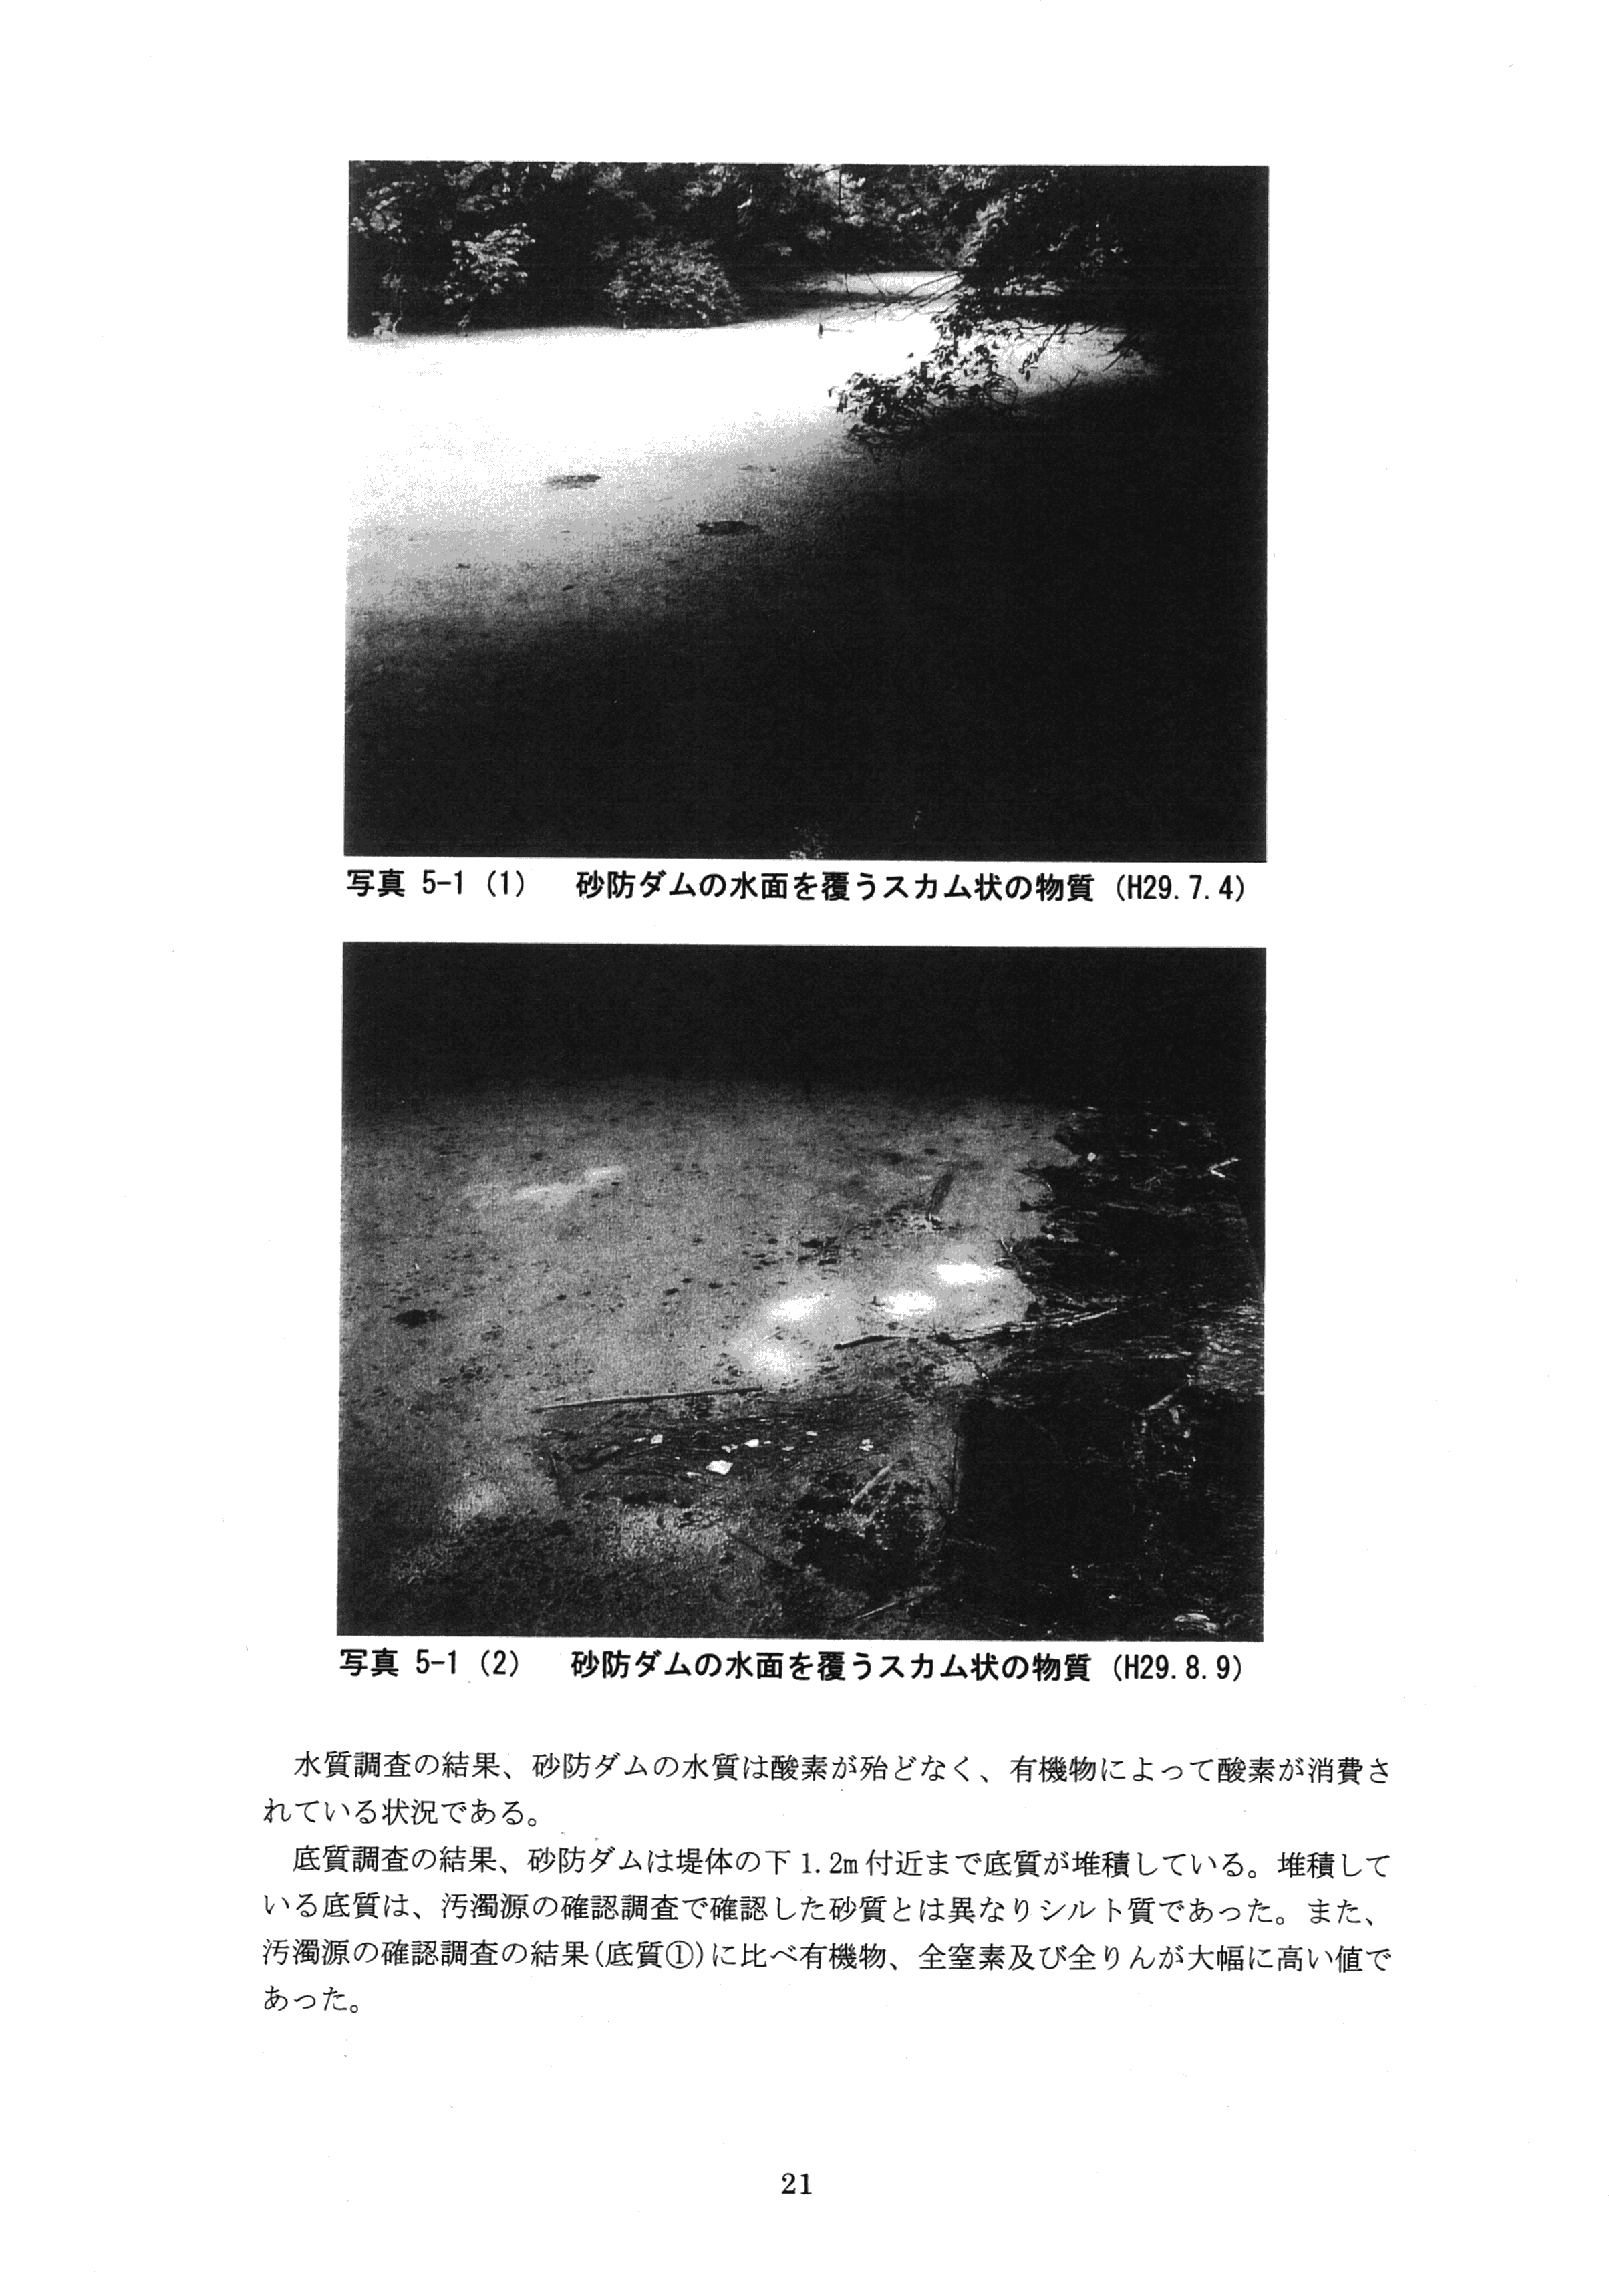 平成29年11月-赤田川水質汚濁状況調査報告書-23